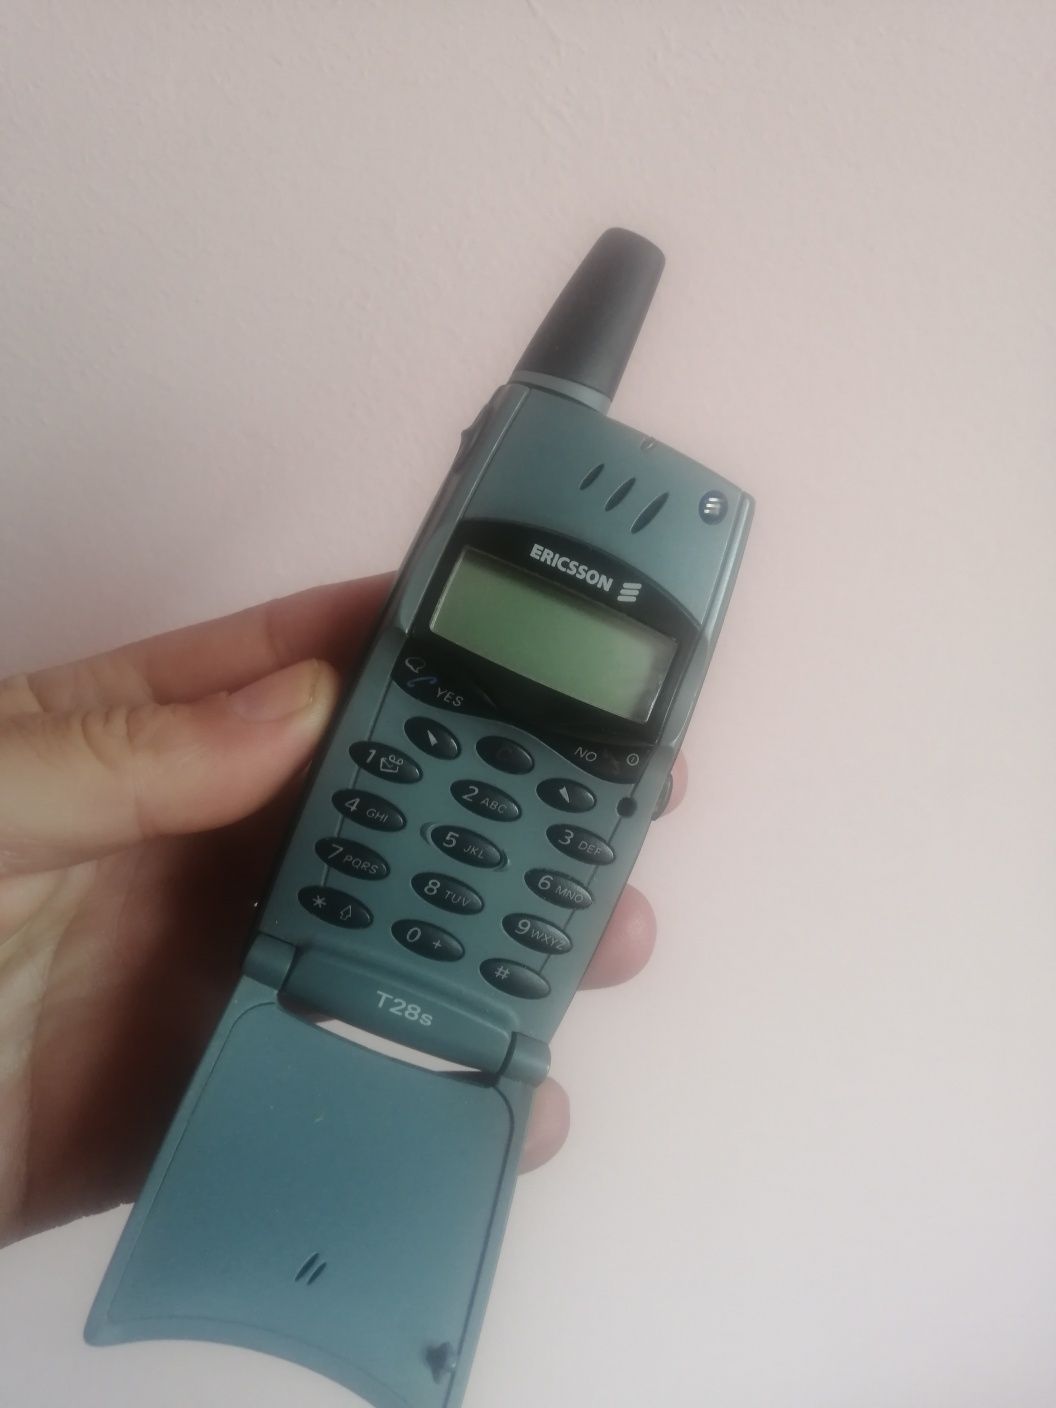 Sony Ericsson T28s